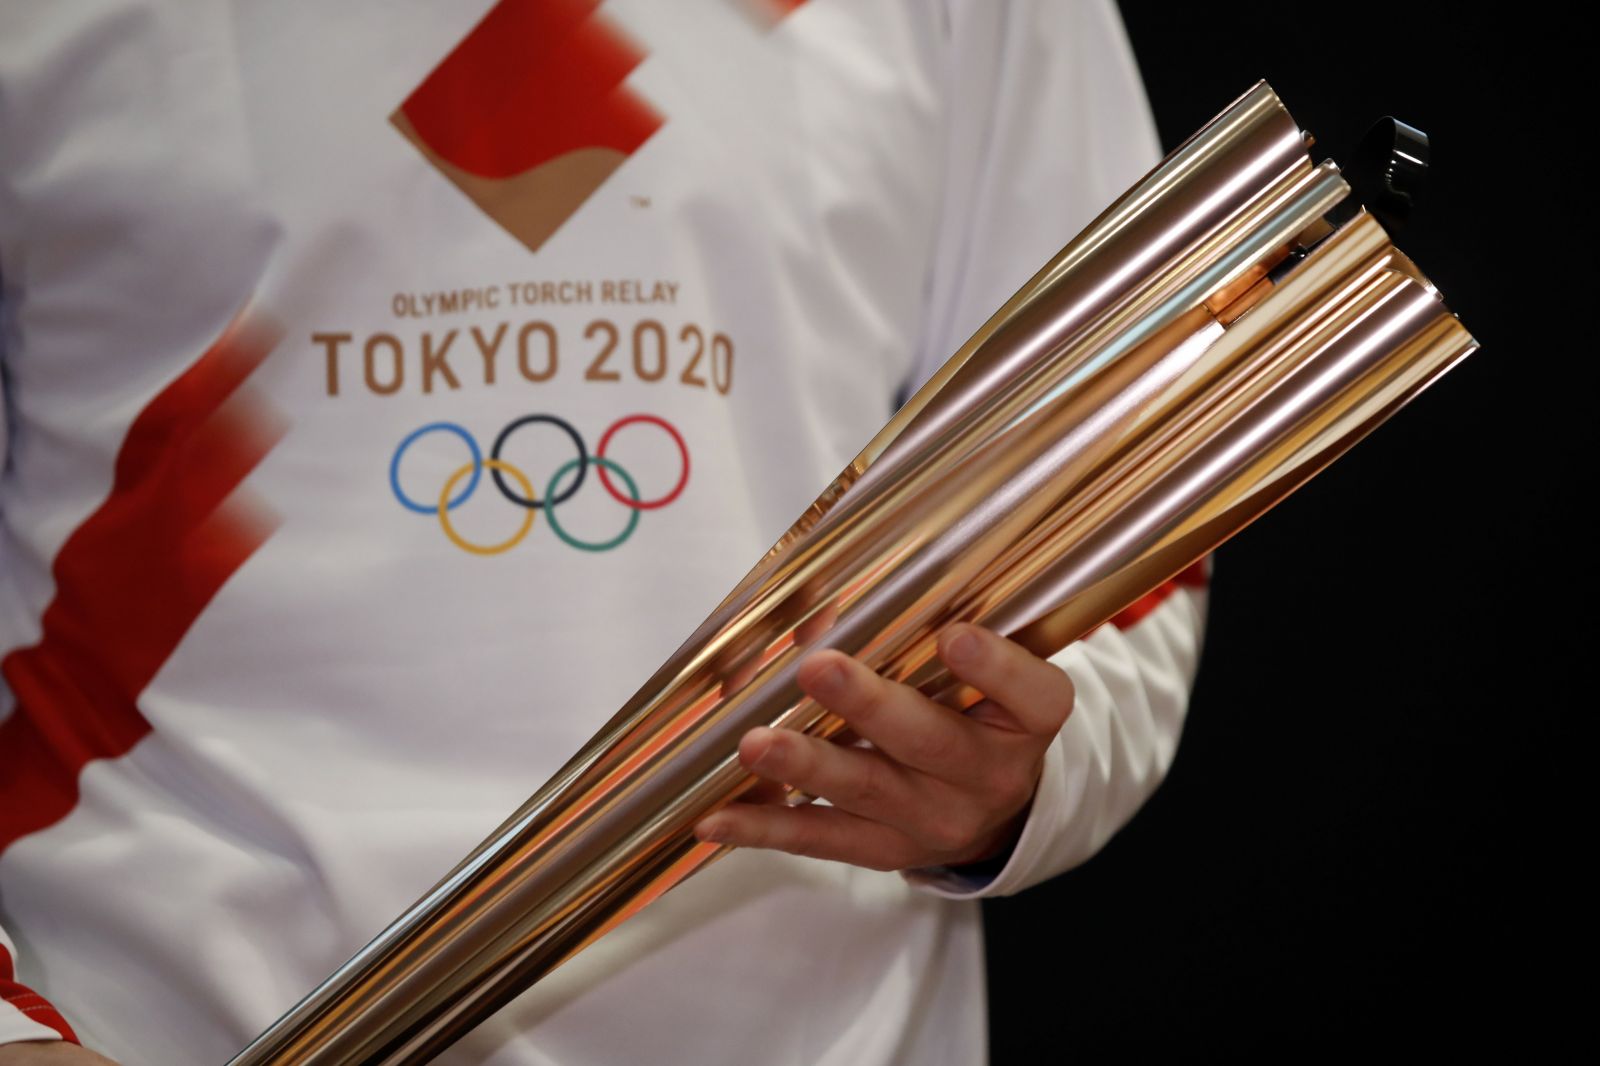 Je pravdepodobné, že sa zruší olympiáda v Tokiu. Dôvodom je koronavírus